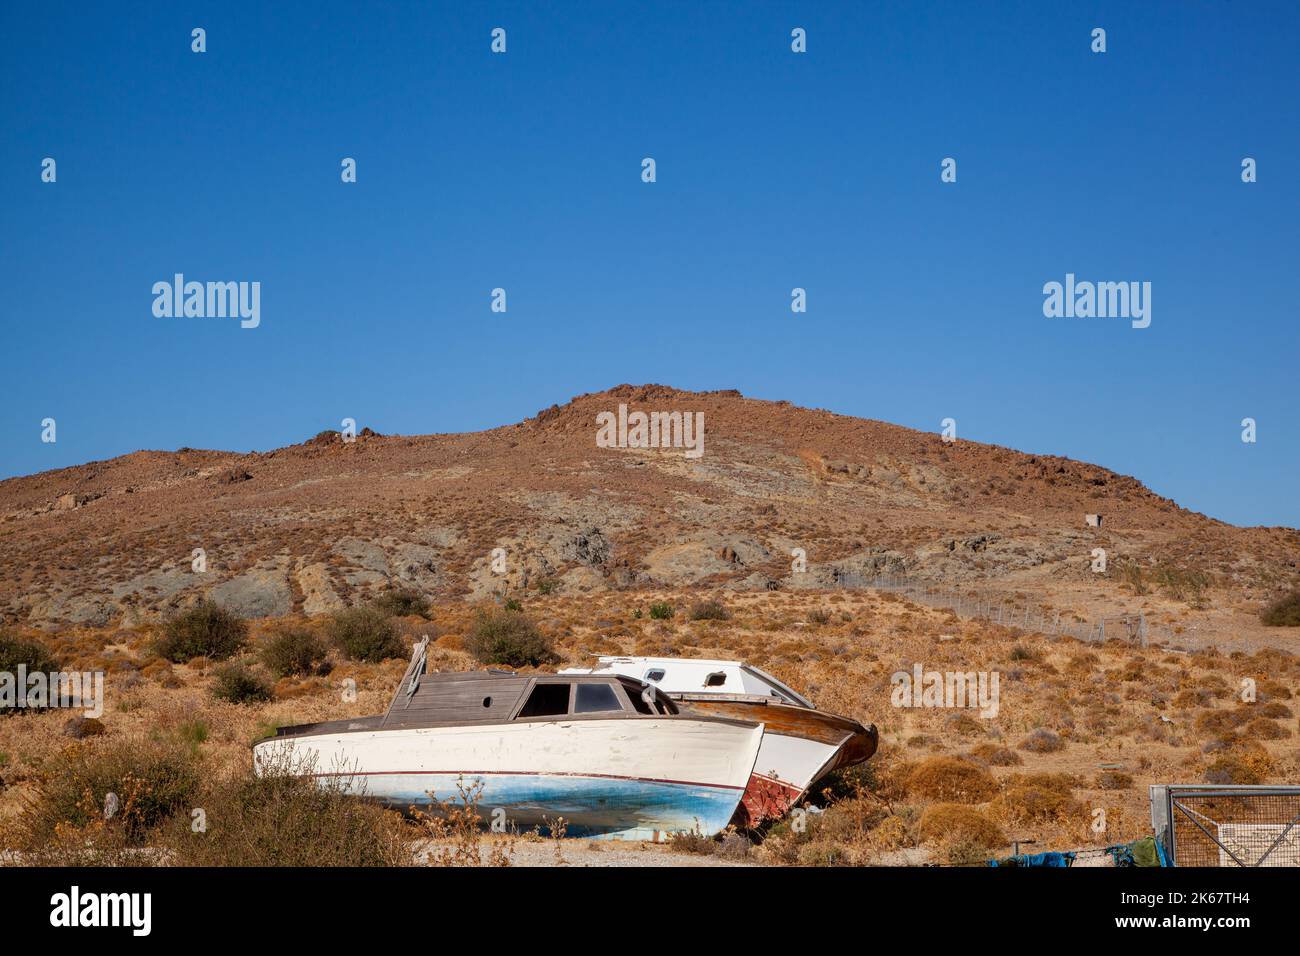 Vieux bateaux abandonnés sur une colline à la station de vacances grecque de Molyvos sur l'île grecque de Lesvos Banque D'Images